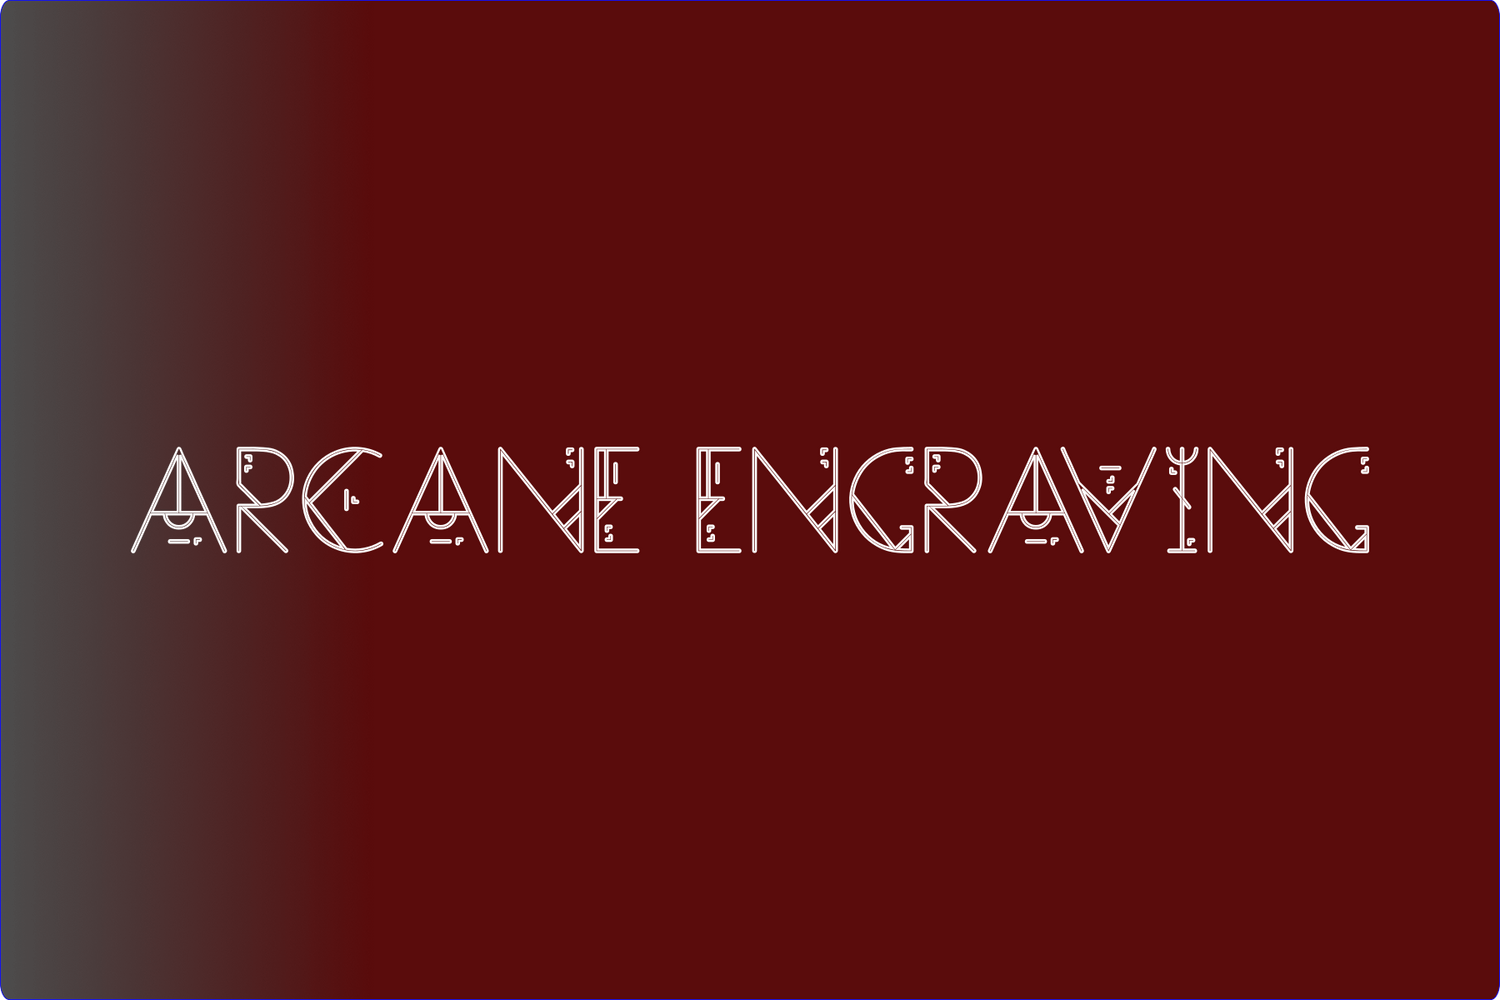 Arcane Engraving LLC Logo Banner